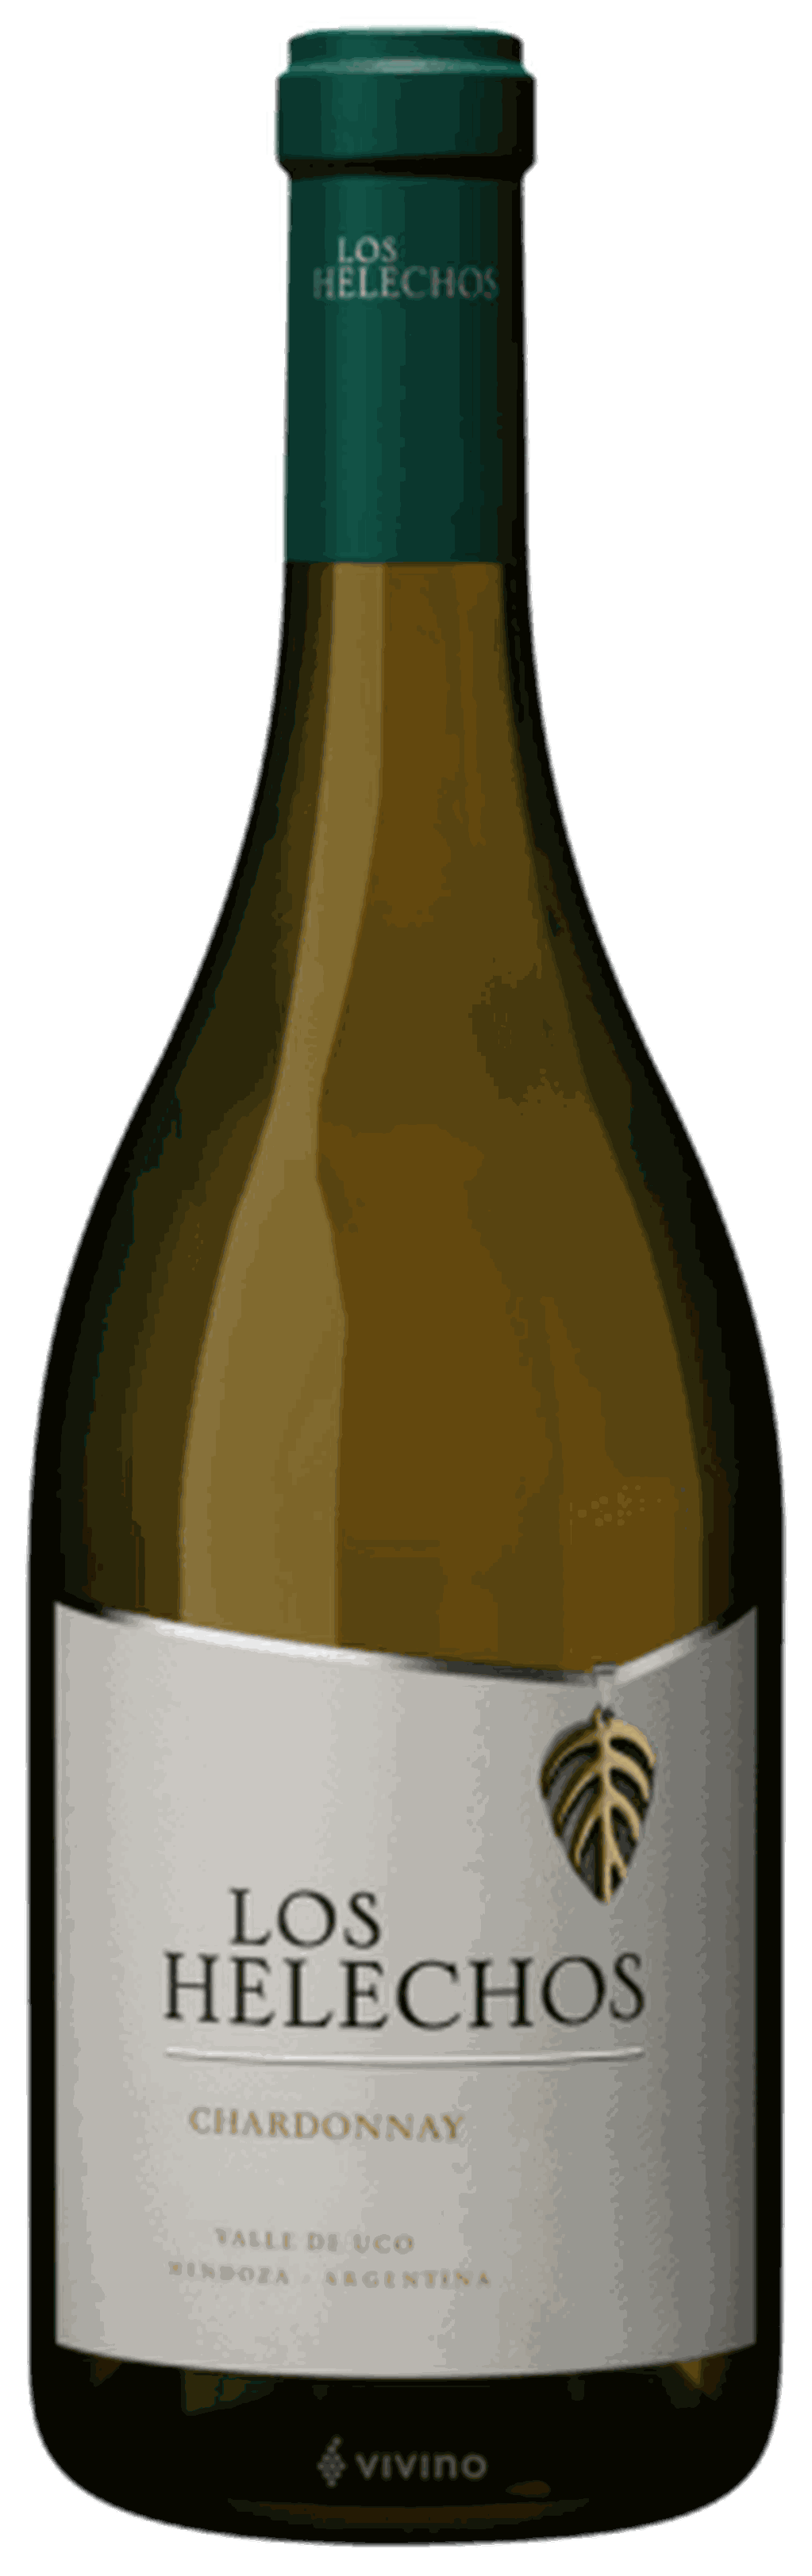 Los Helechos Chardonnay, Bodega Los Helechos.